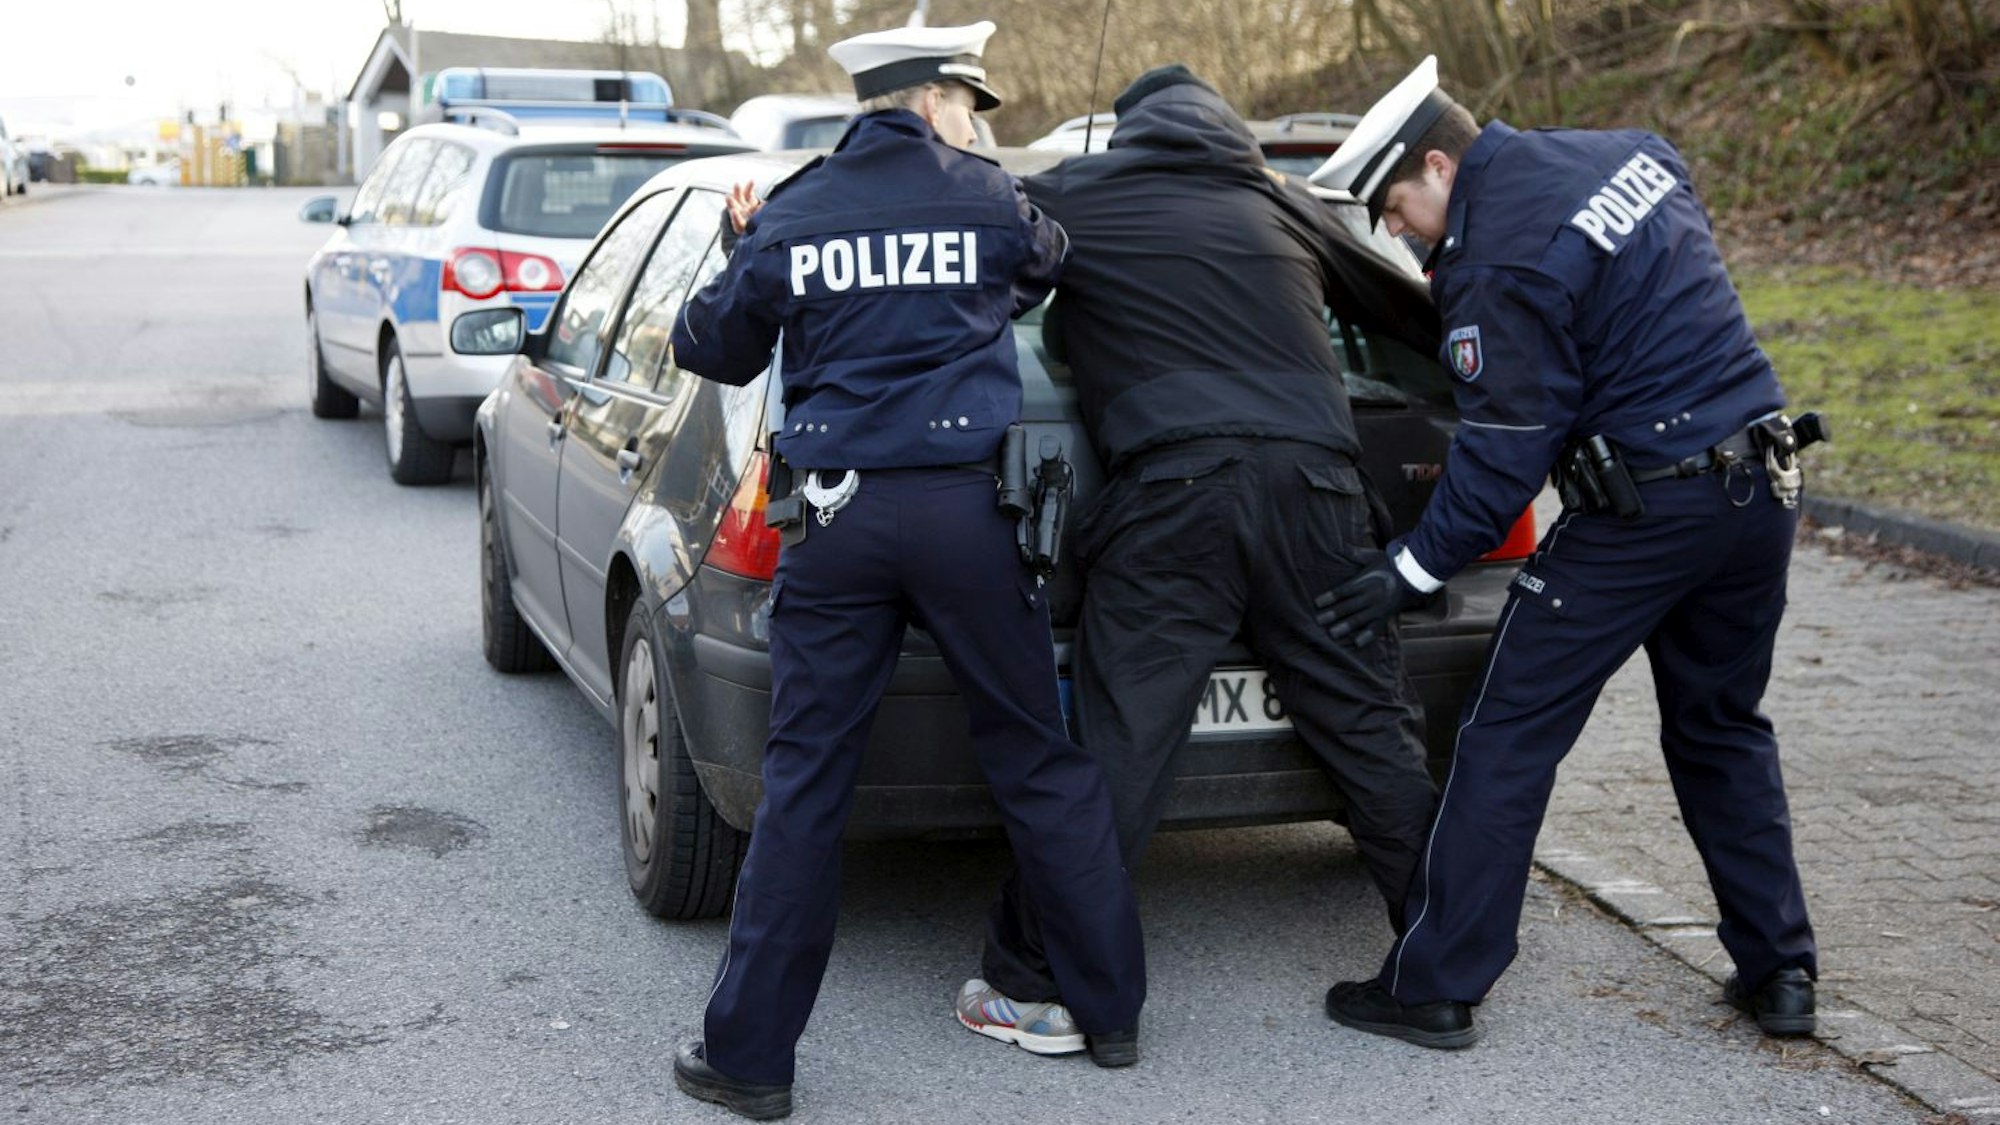 Polizisten kontrollieren eine Person am Heck ihres Pkw.